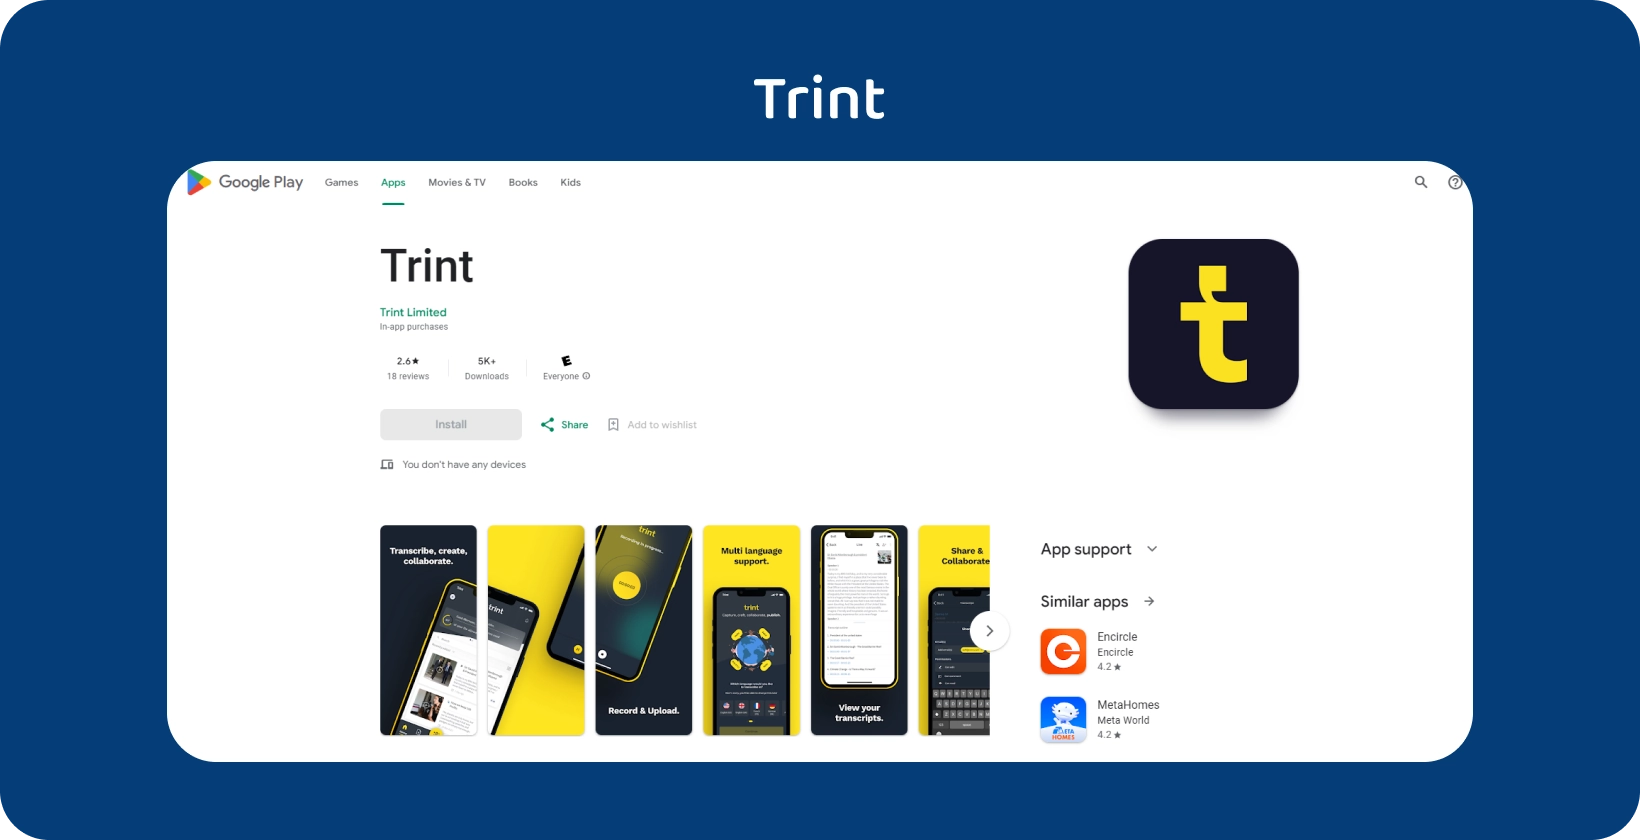 La aplicación Trint se muestra en Google Play, destacando sus servicios de transcripción con una interfaz móvil intuitiva.